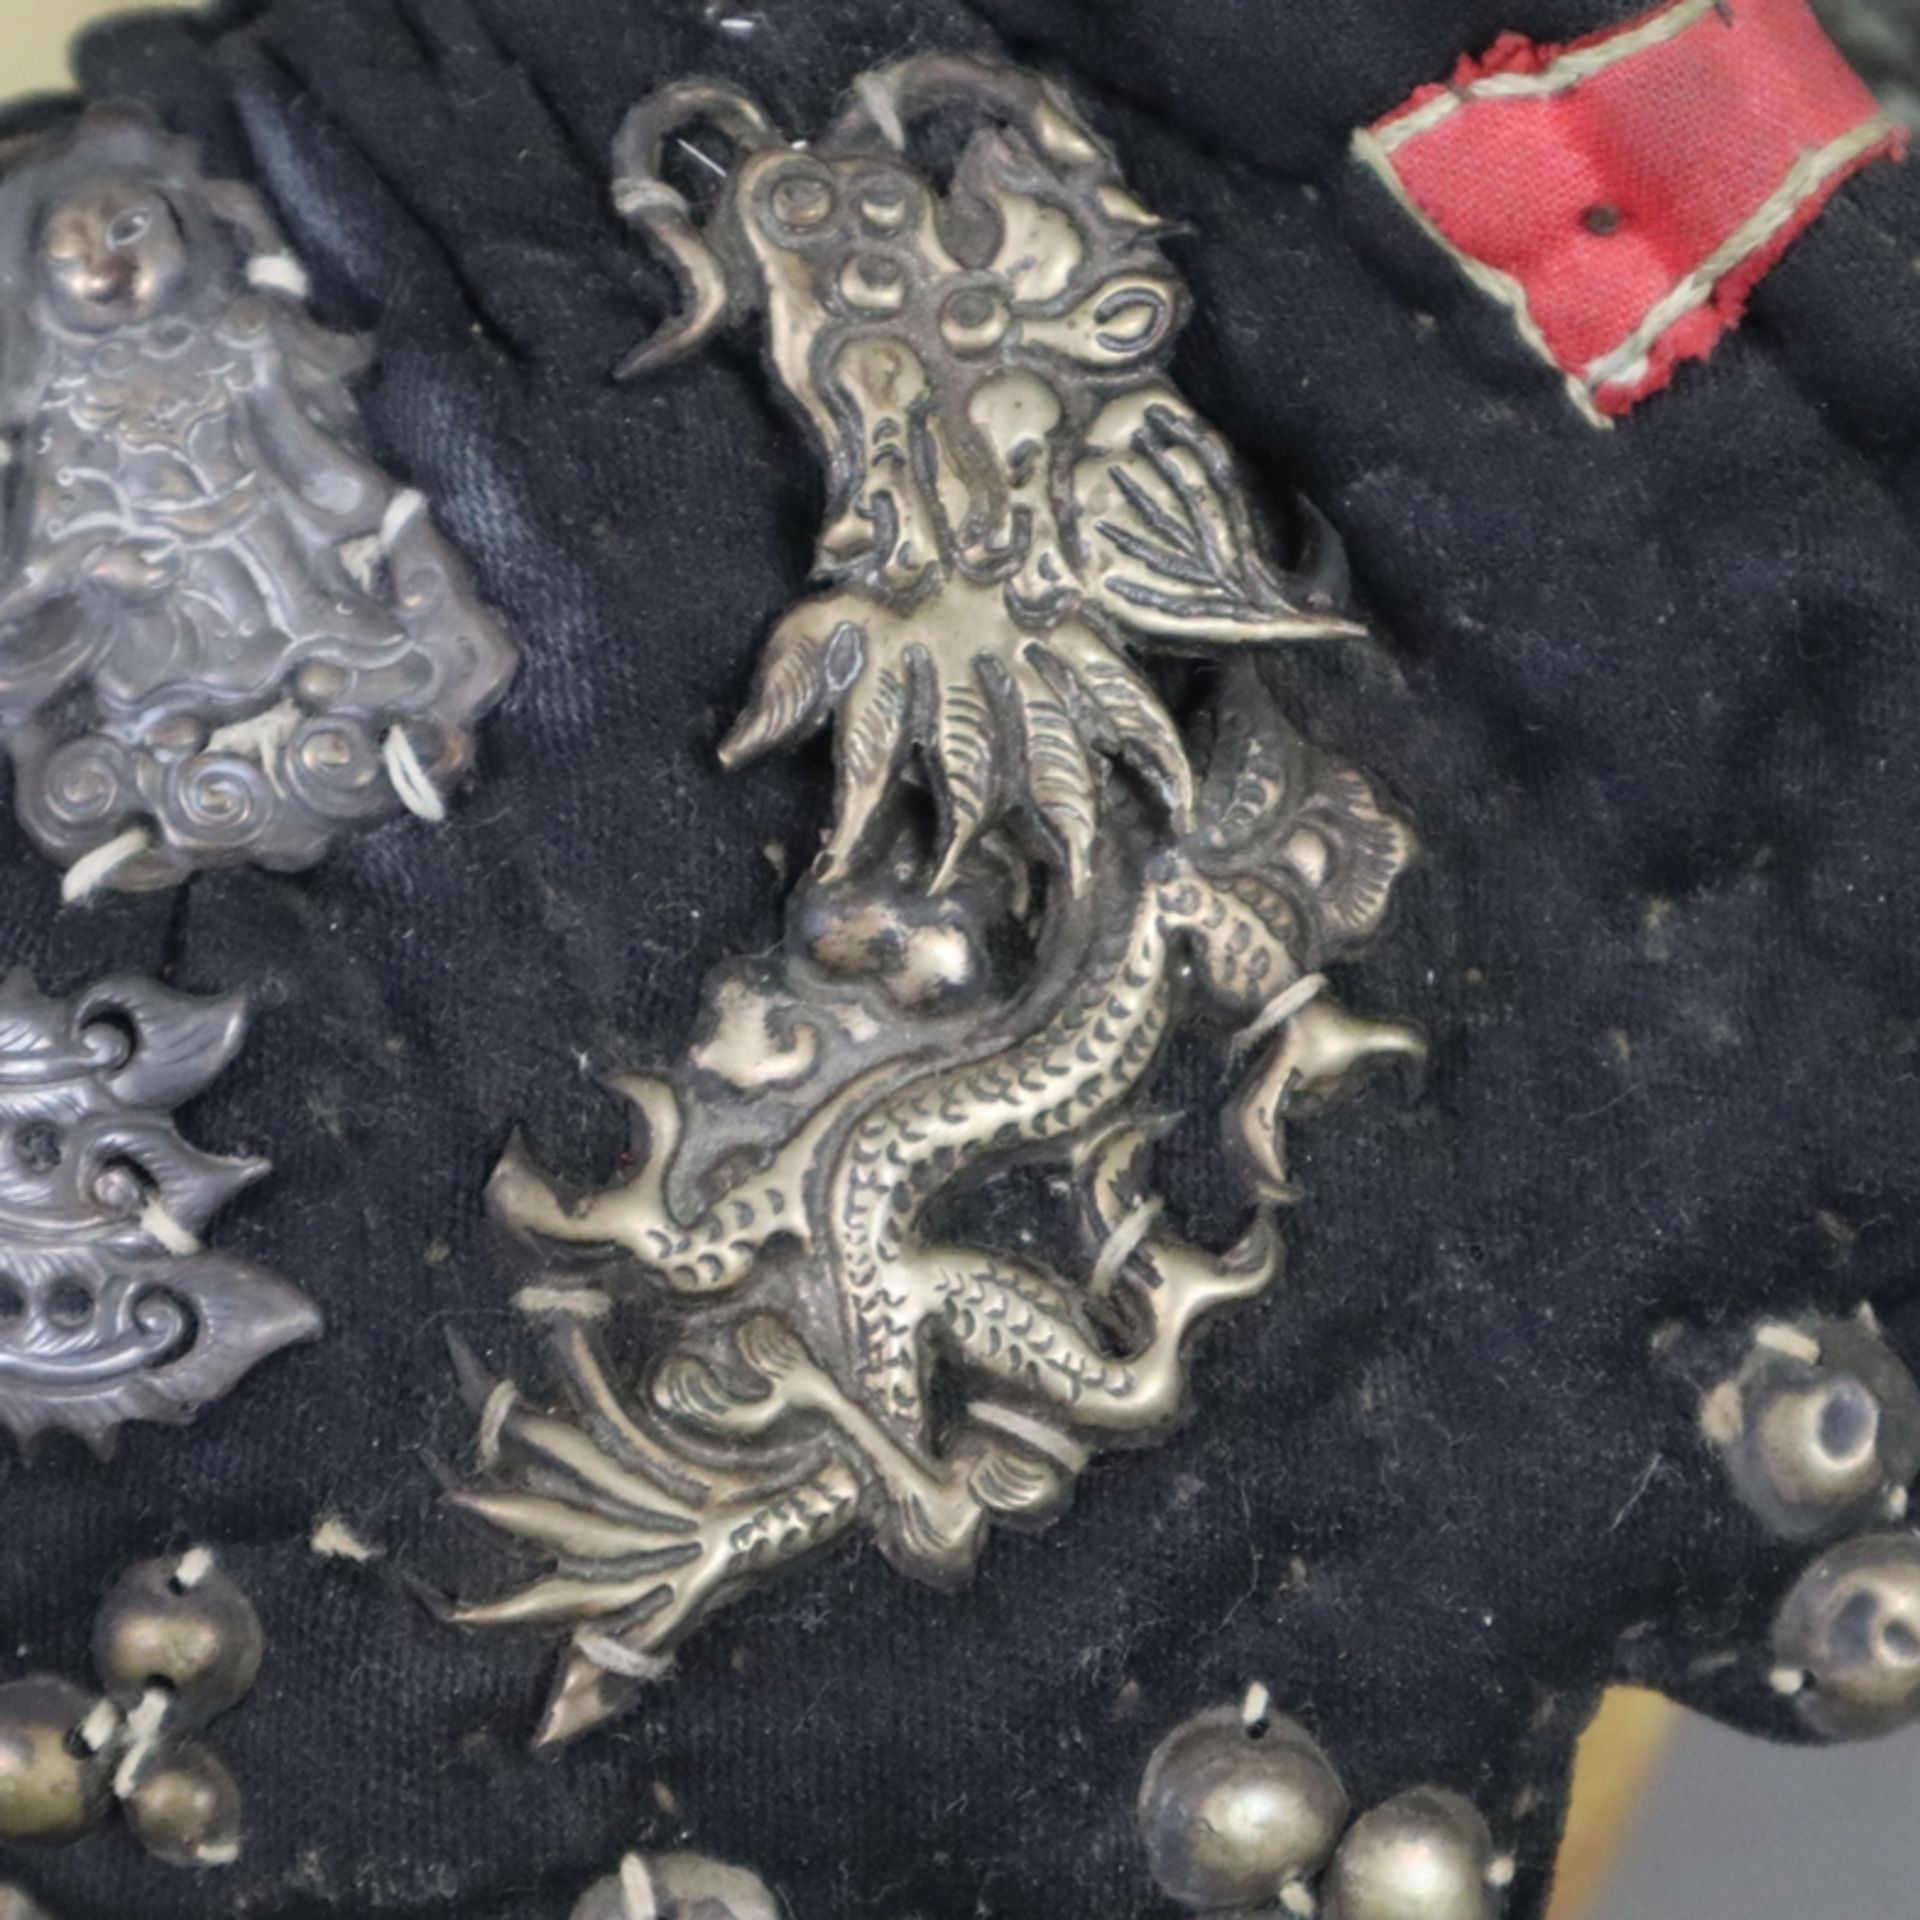 Chinesische Kindermütze und Halsband- China, späte Qing-Dynastie, 19.Jh., Baumwollstoff sowie Seide - Image 6 of 12